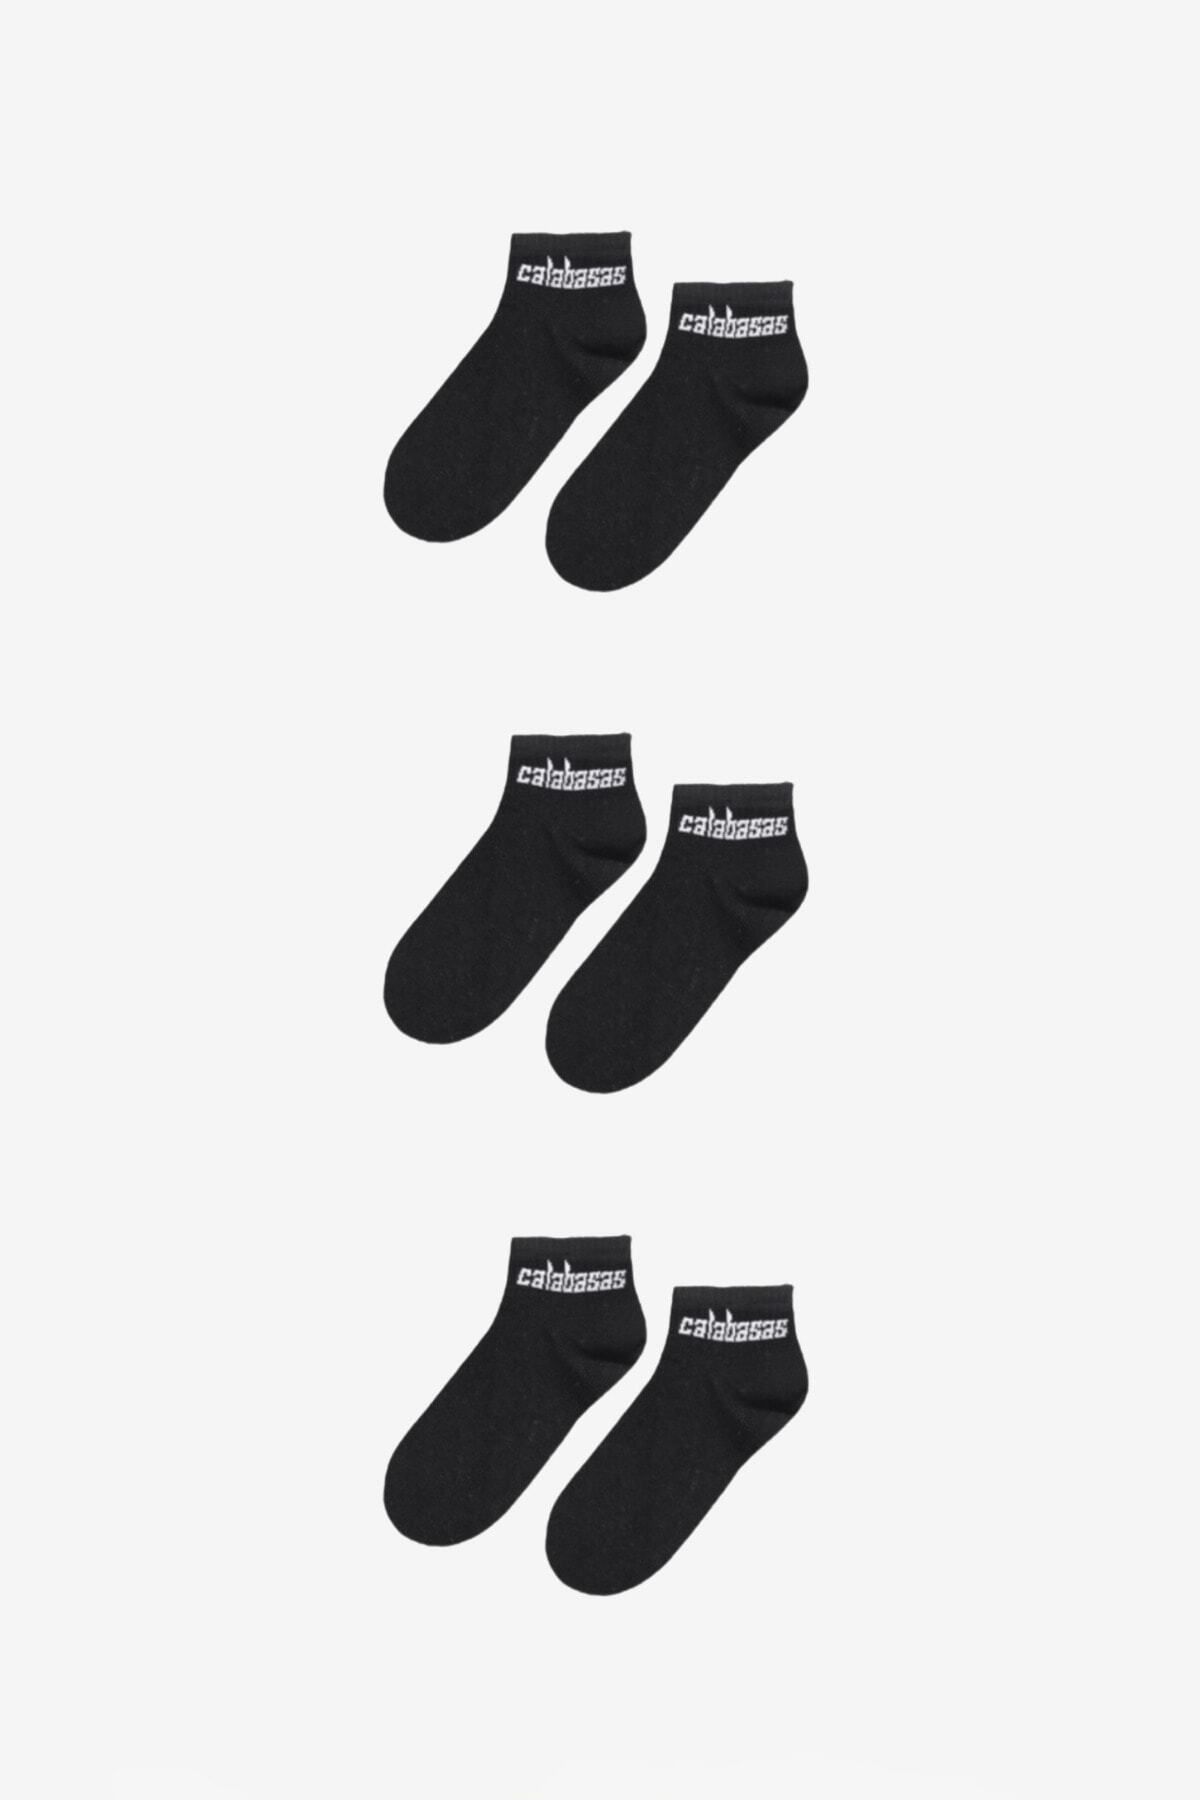 BOSHETTI Unisex Yıkamalı Premium Sloganlı Siyah 3'lü Paket Bilekte Örme Çorap